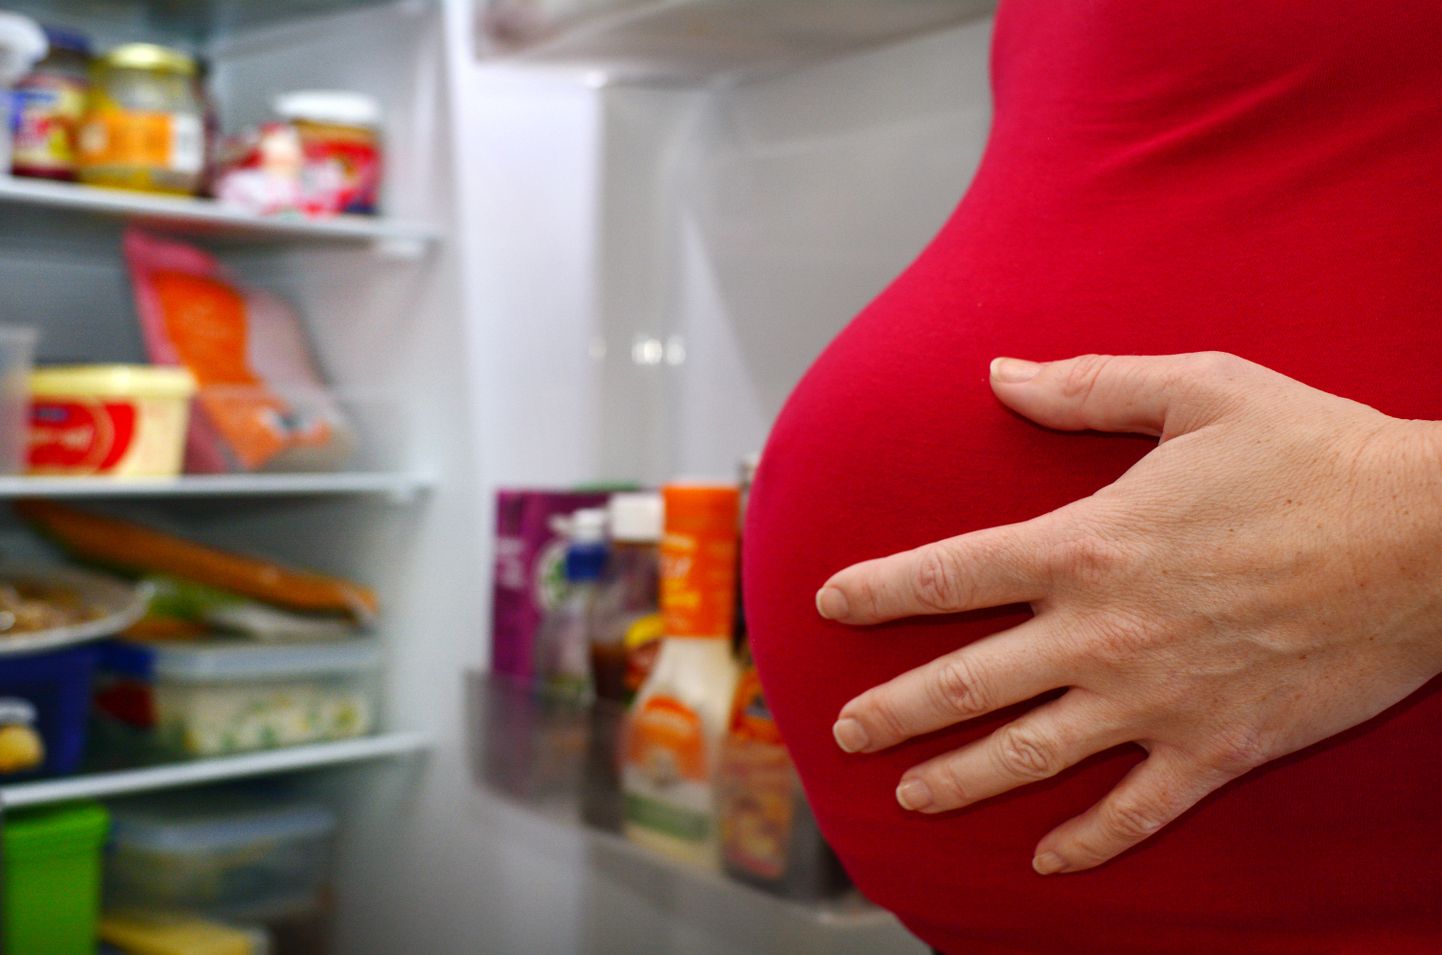 Uuring näitas ka, et tervisliku toitumise ja füüsilise aktiivsuse sekkumist saanud emadel säilis kolm aastat pärast sünnitamist tervislikum dieet.